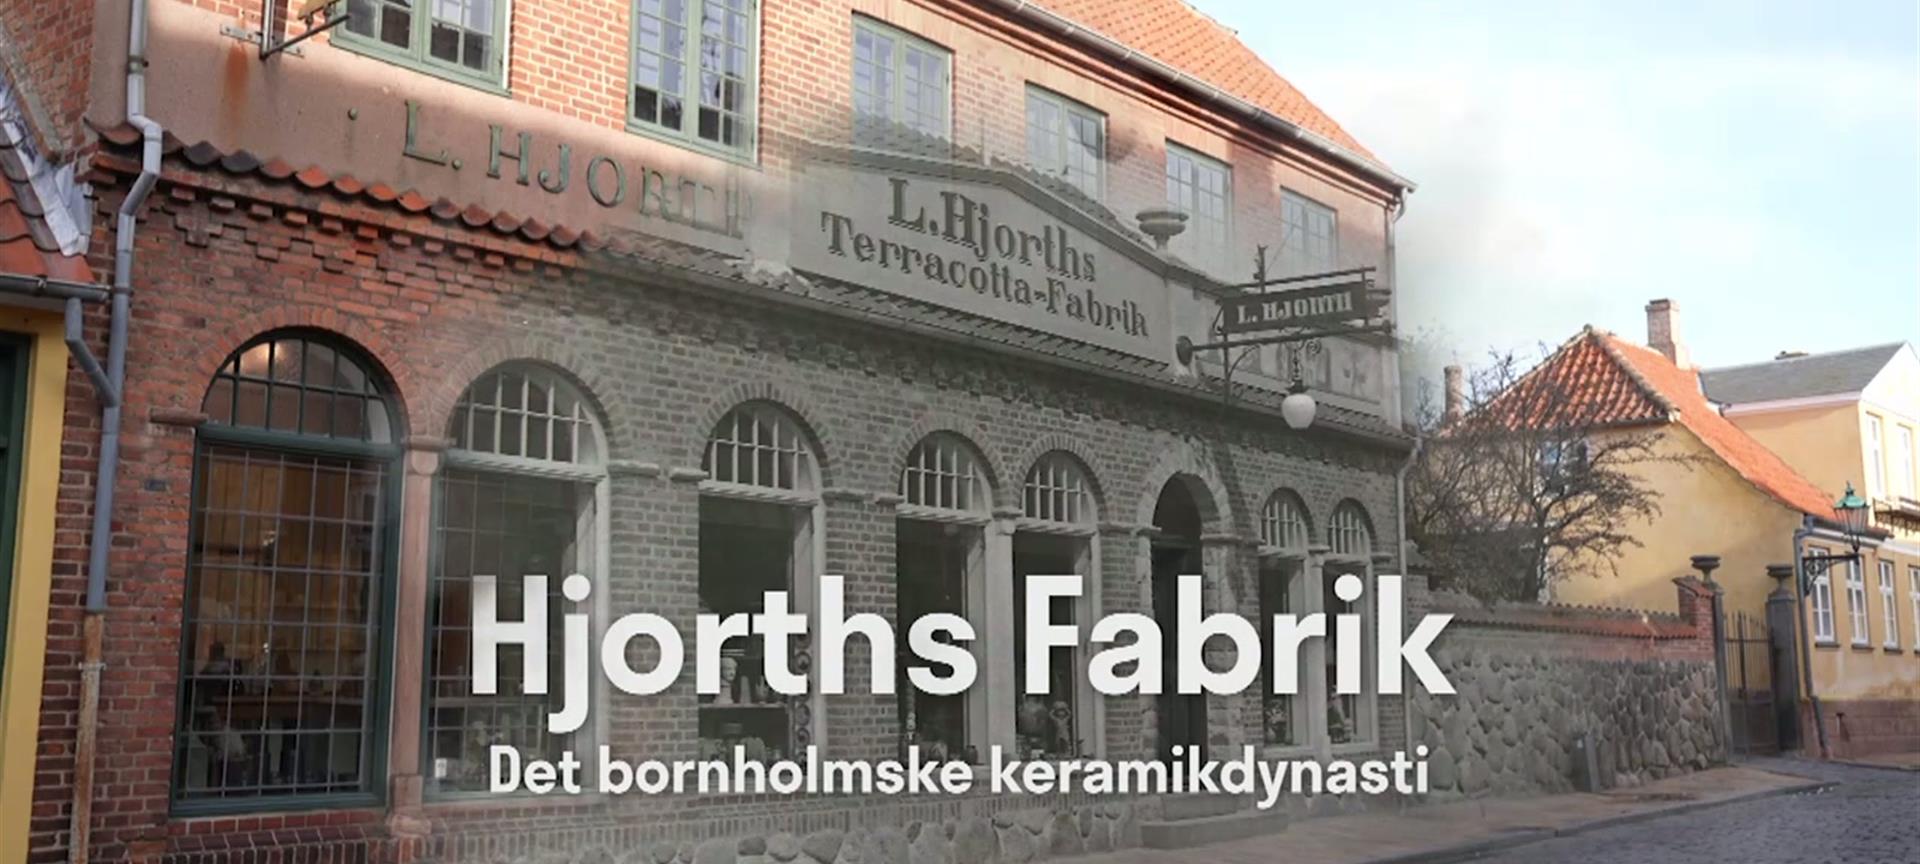 Hjorths Fabrik - Det bornholmske keramikdynasti